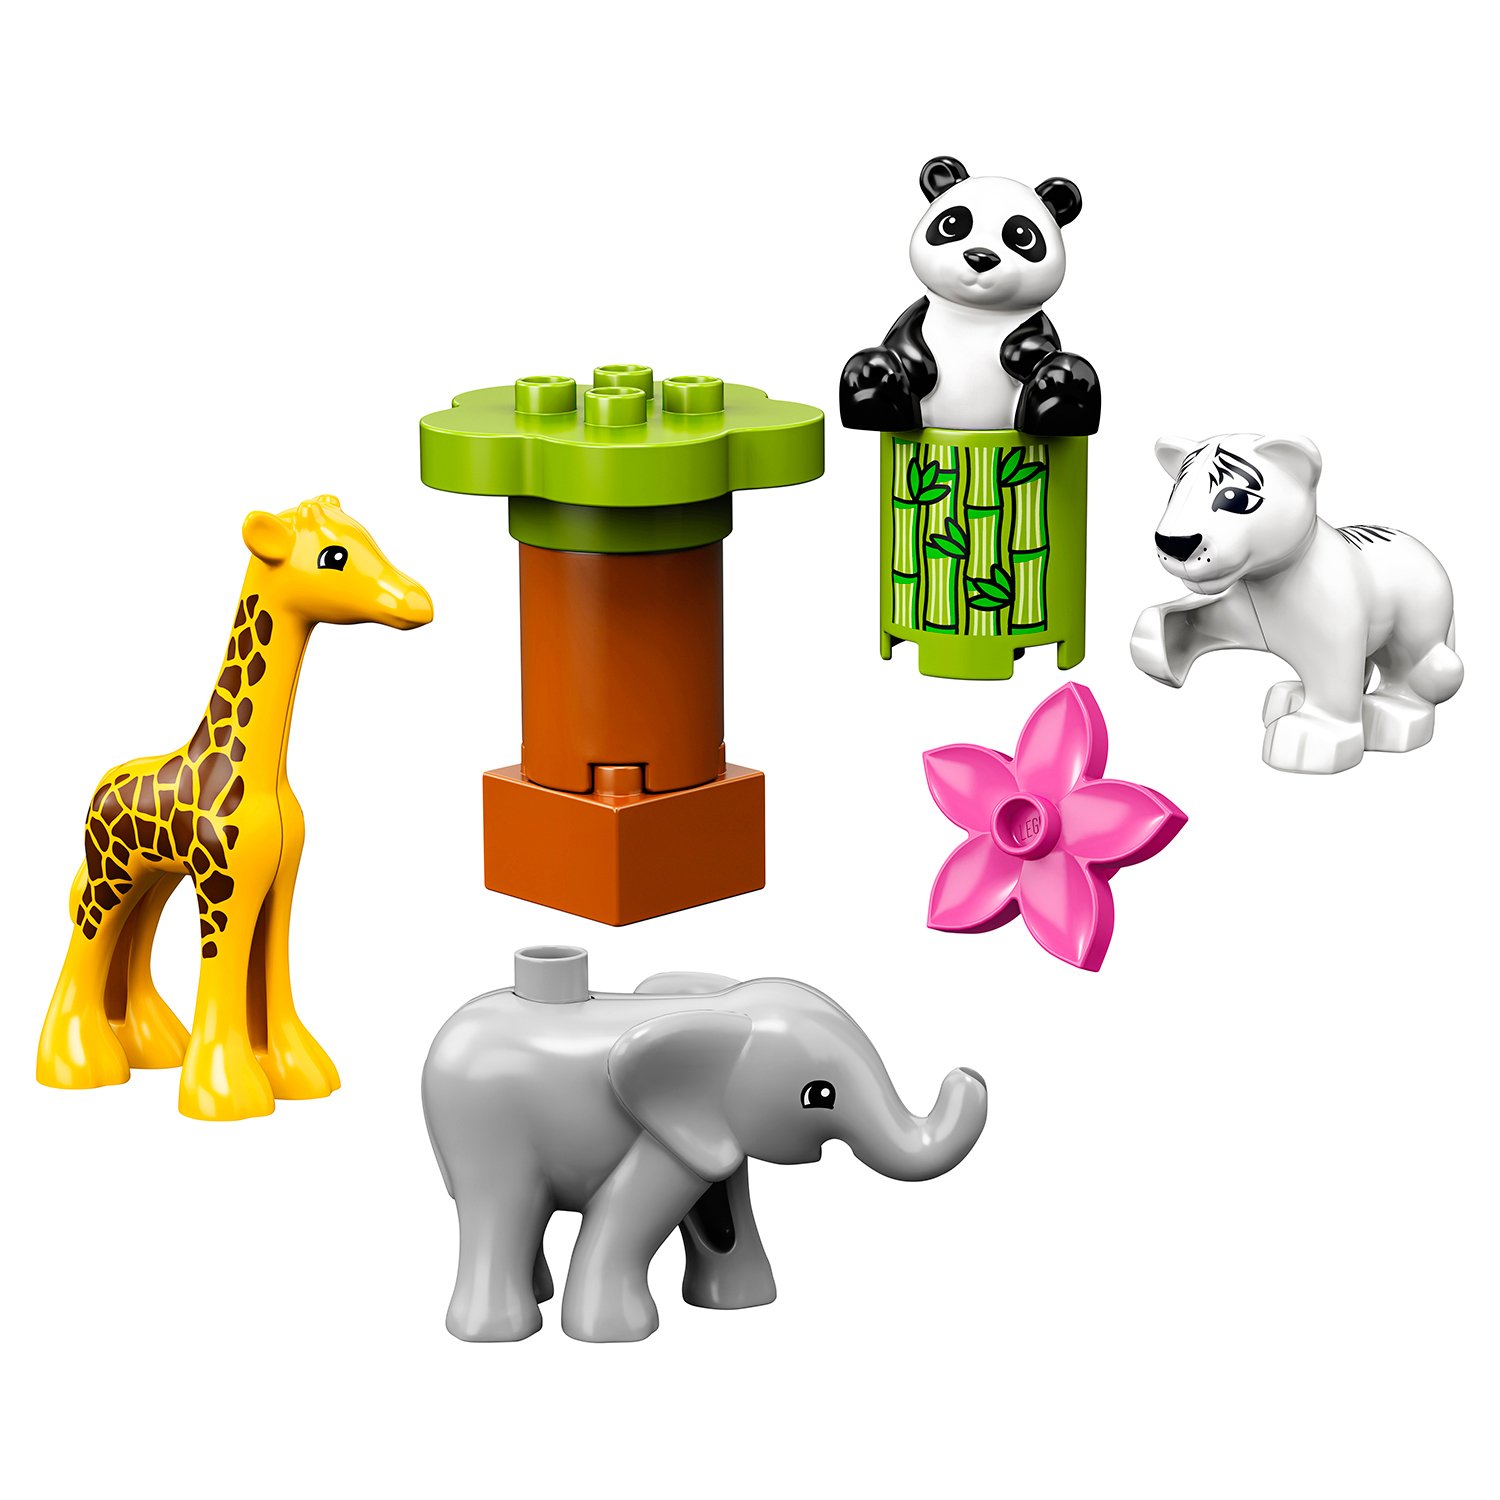 Lego Duplo 10904 Детишки животных